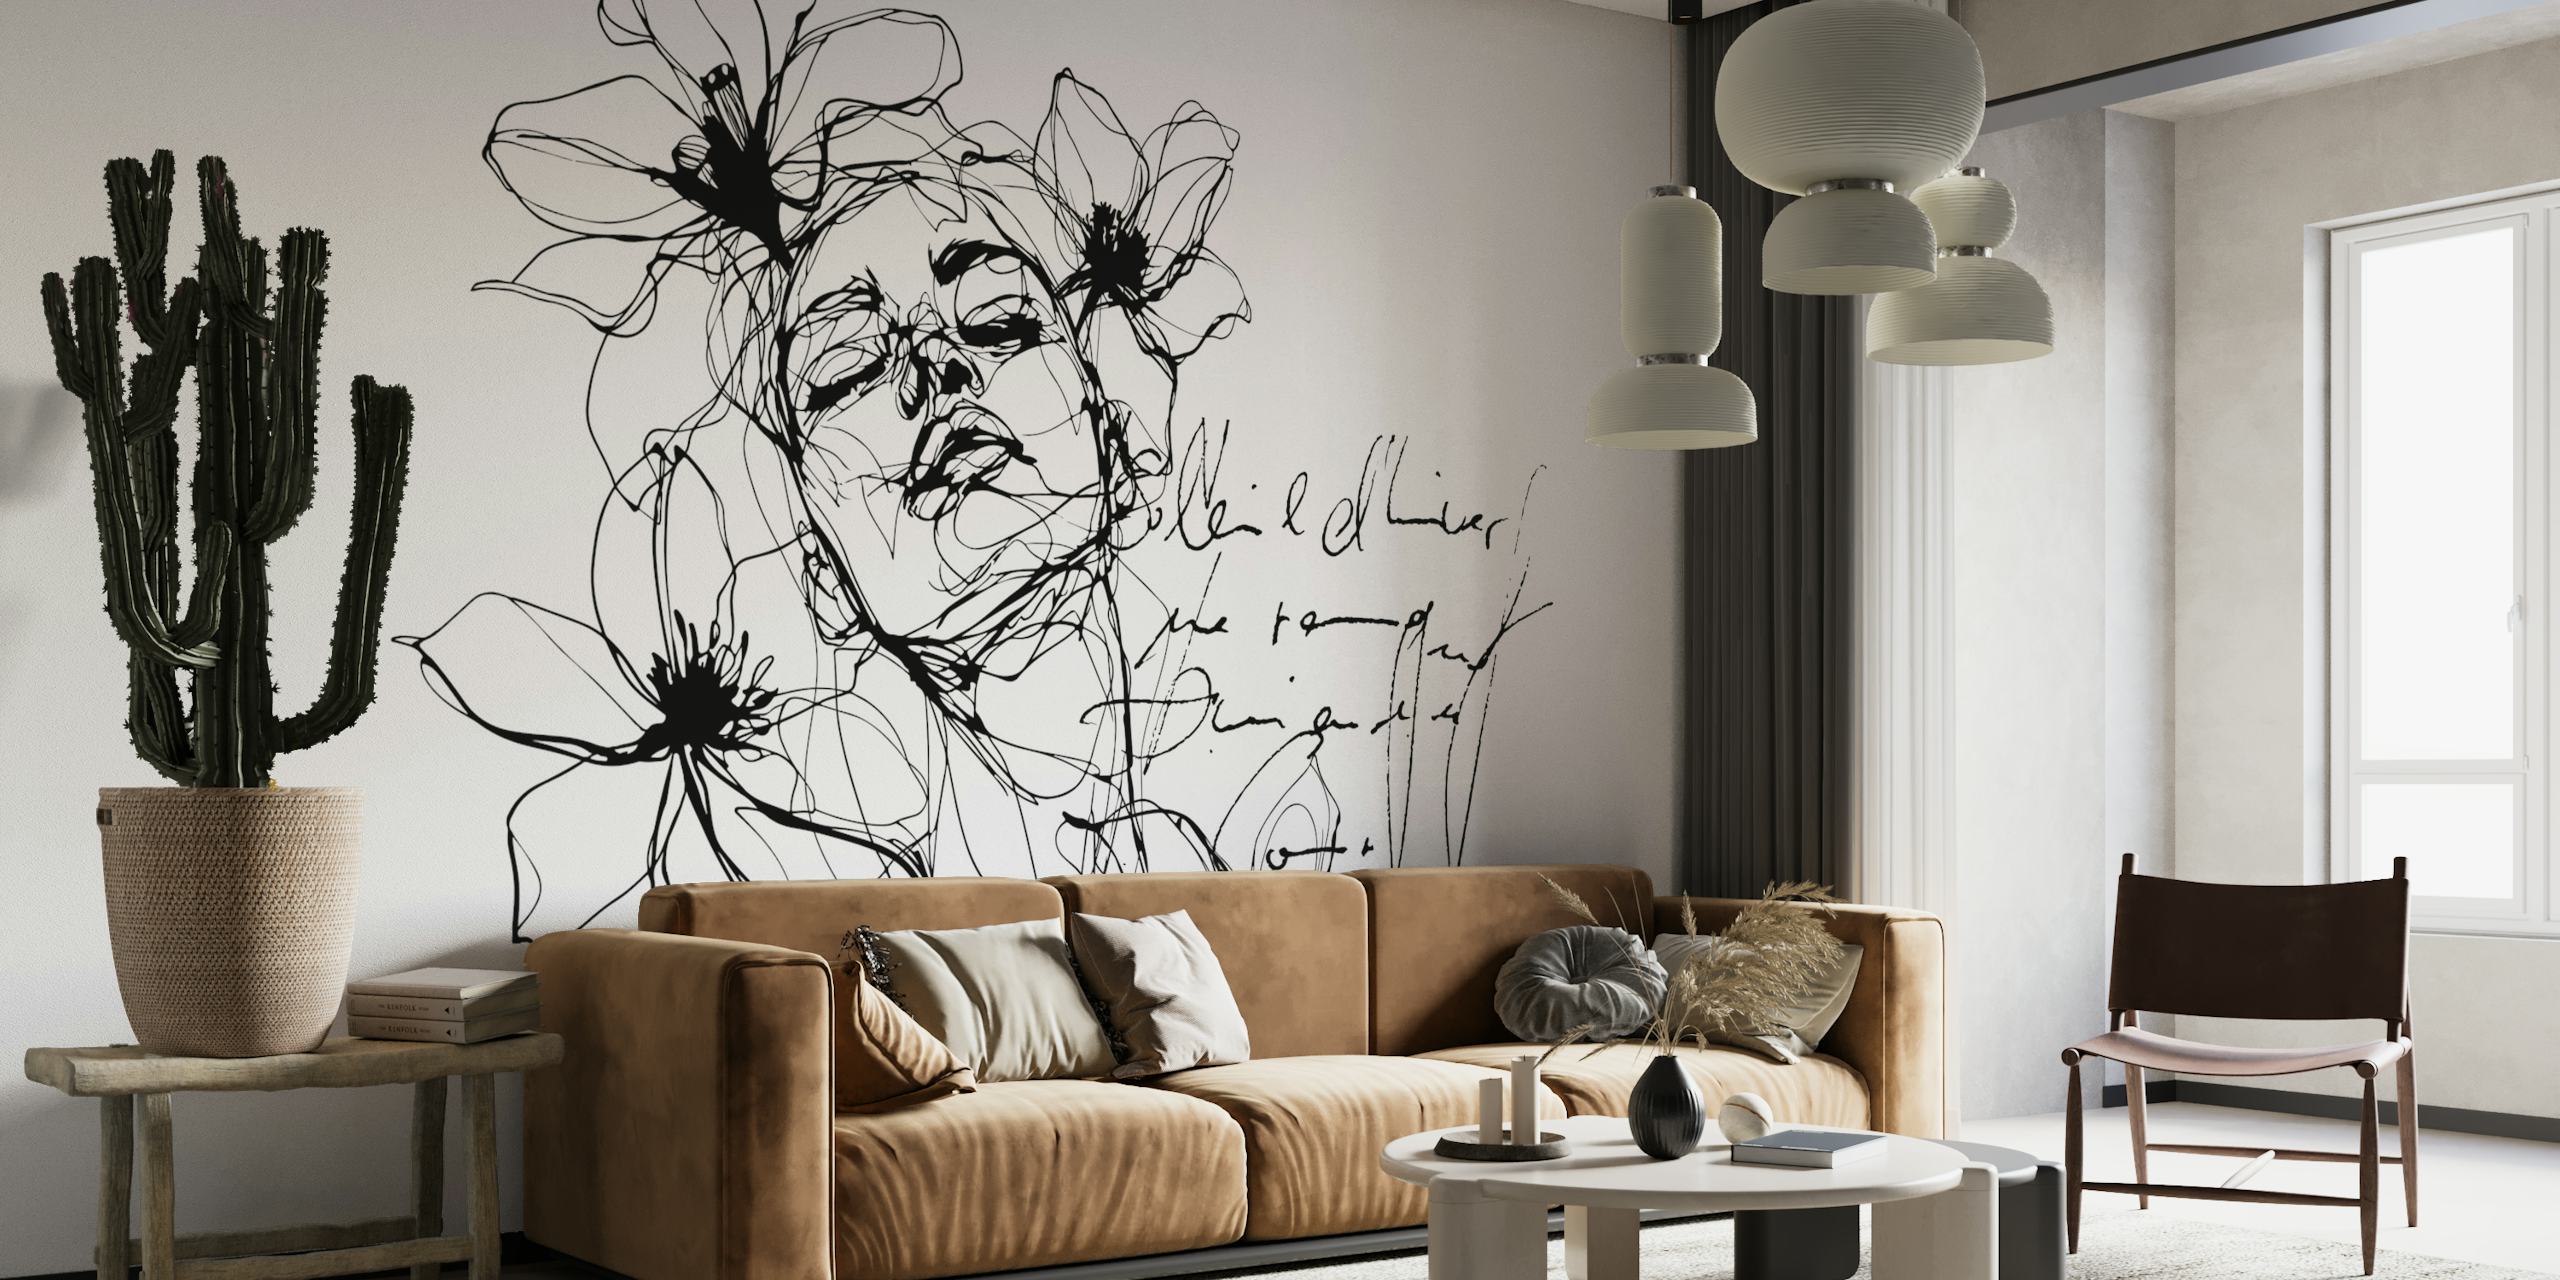 Mural de pared minimalista con arte lineal de una figura femenina con detalles florales en blanco y negro